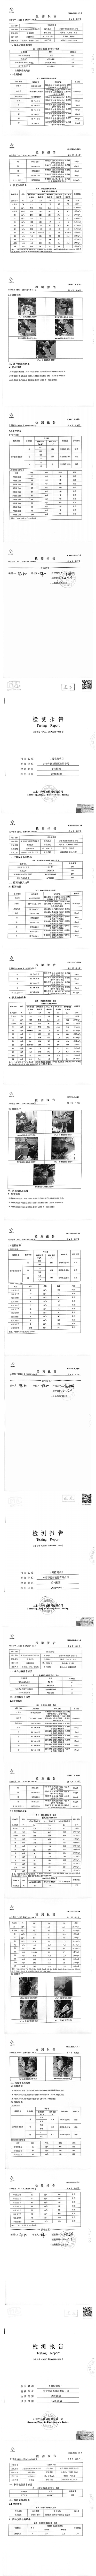 東營華源新能源有限公司第三季度檢測信息公示(圖5)